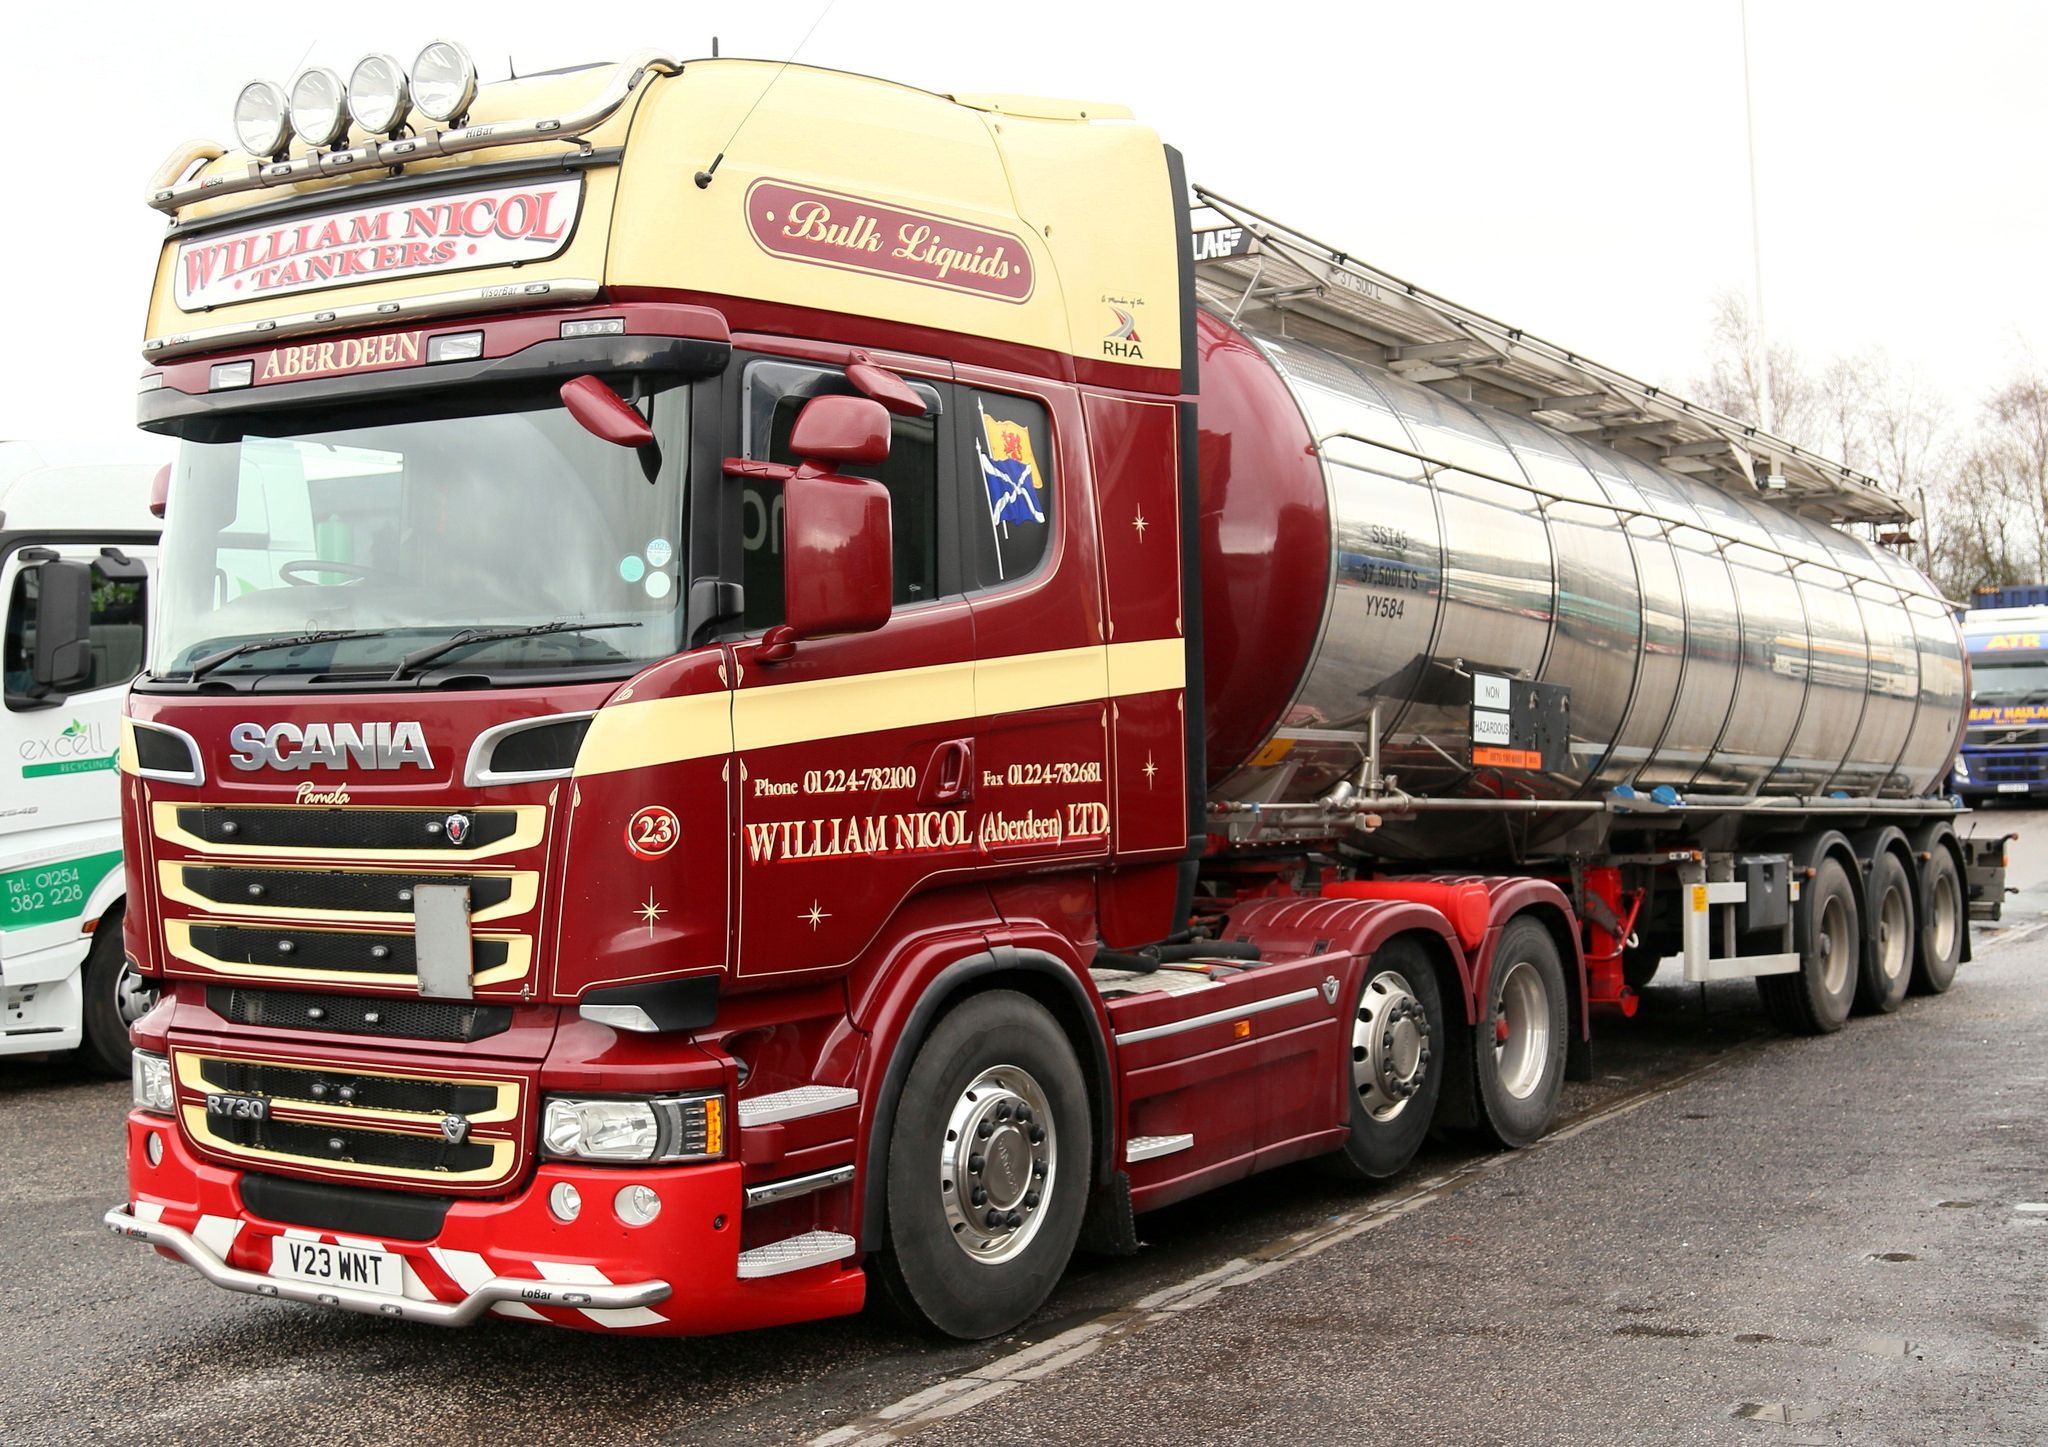 Scania R720, William Nicol, Aberdeen, Y23WNT, 2050x1450 HD Desktop